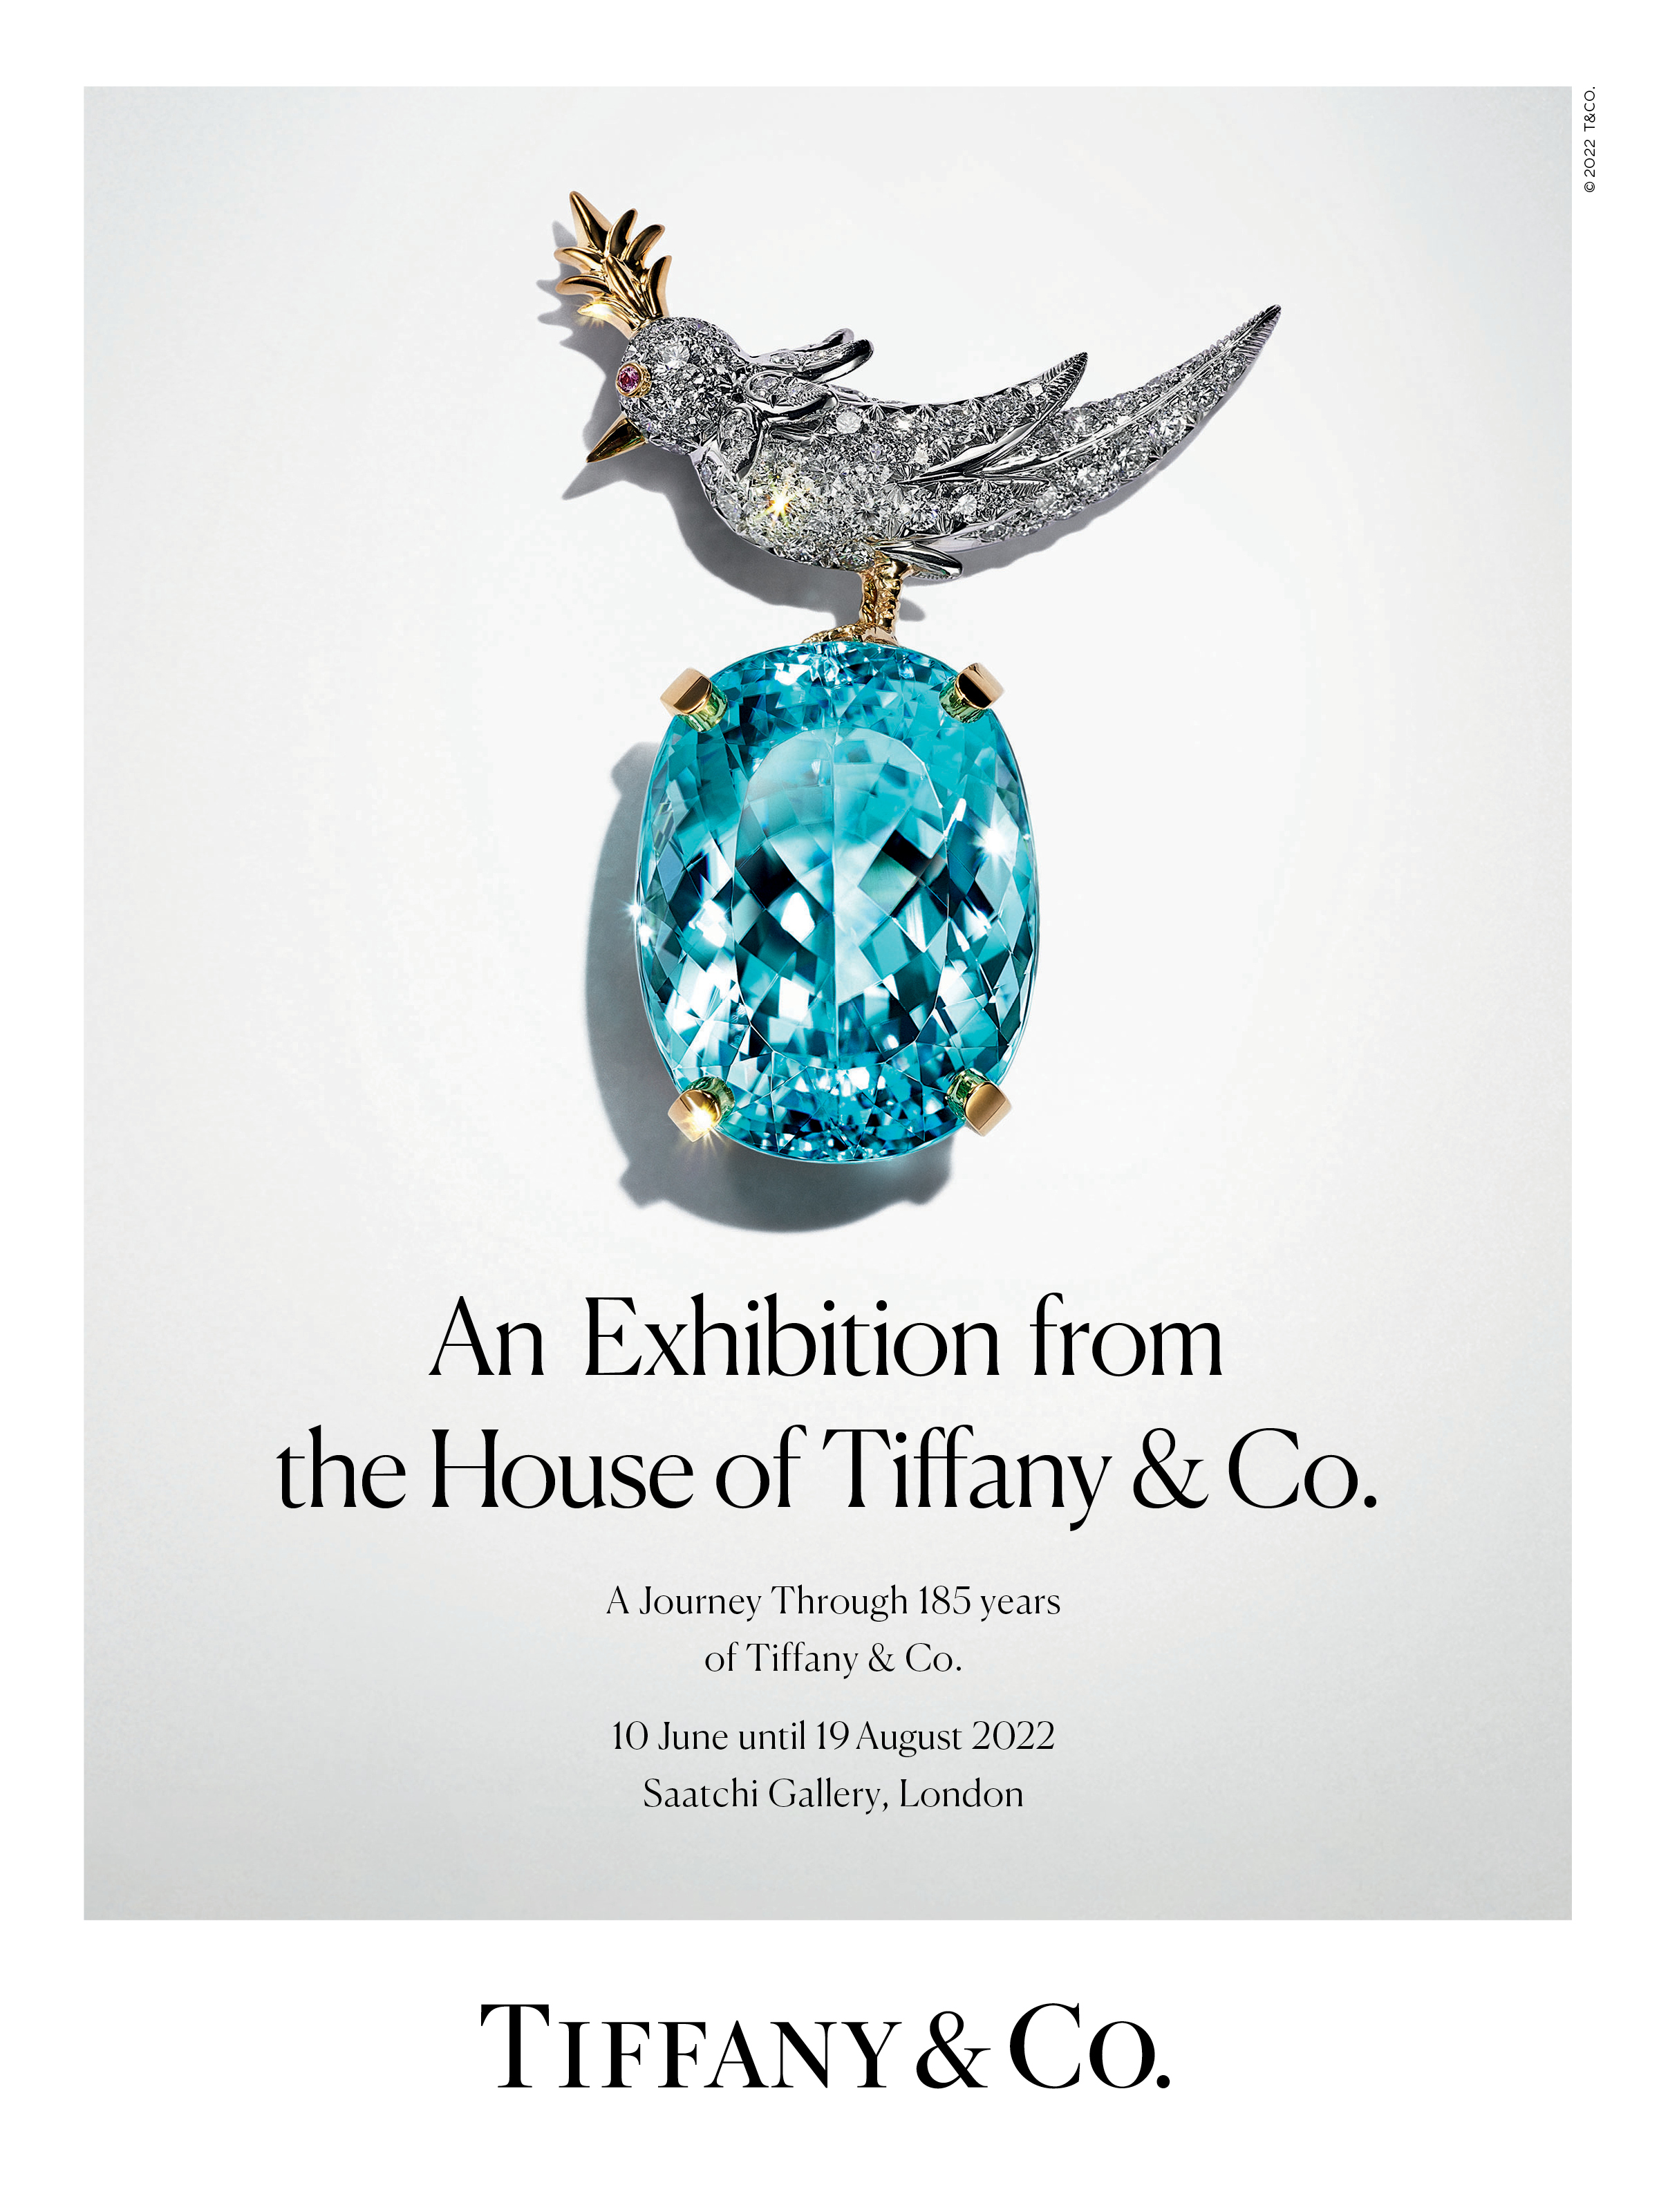 蒂芙尼匠心妙艺展览即将登陆伦敦耀目呈现非凡珠宝,卓绝工艺与艺术